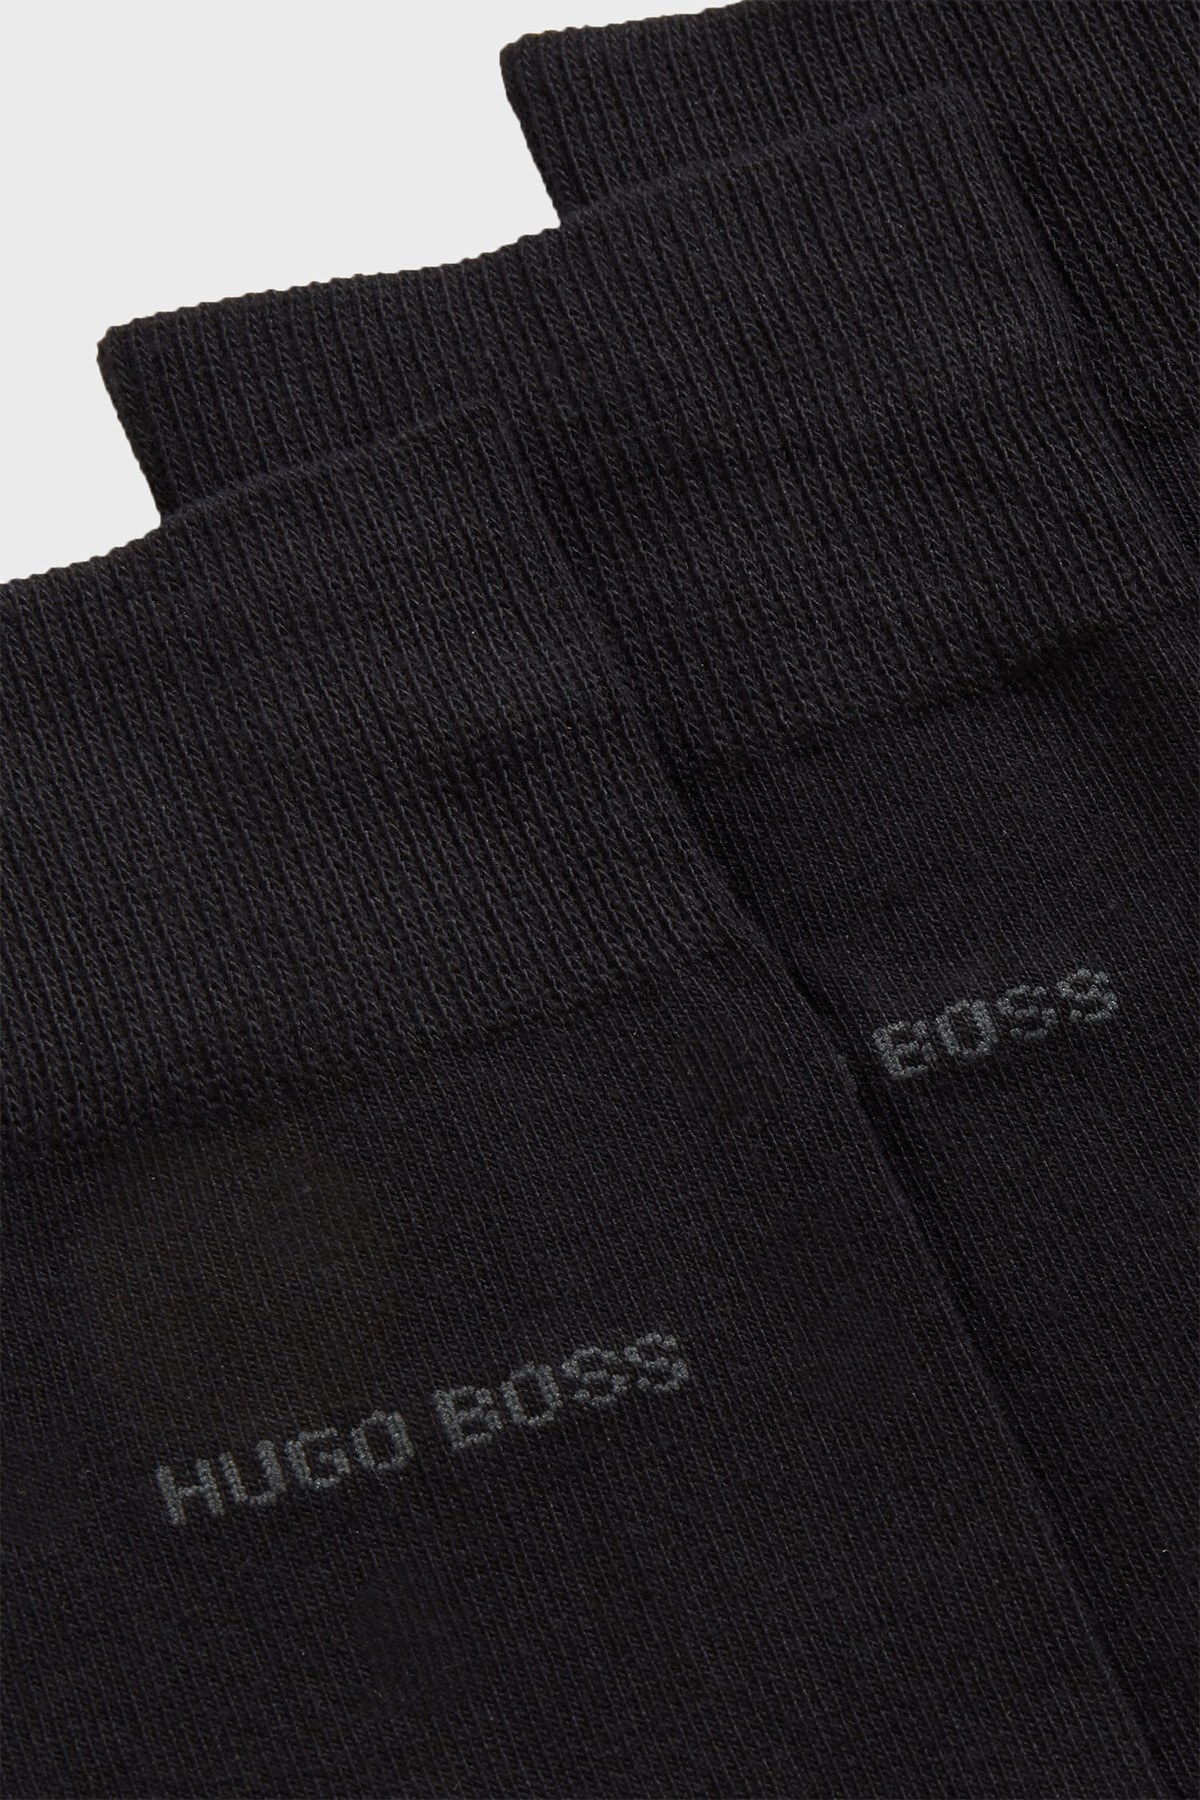 Hugo Boss 3 Pack Erkek Çorap 50388453 001 SİYAH